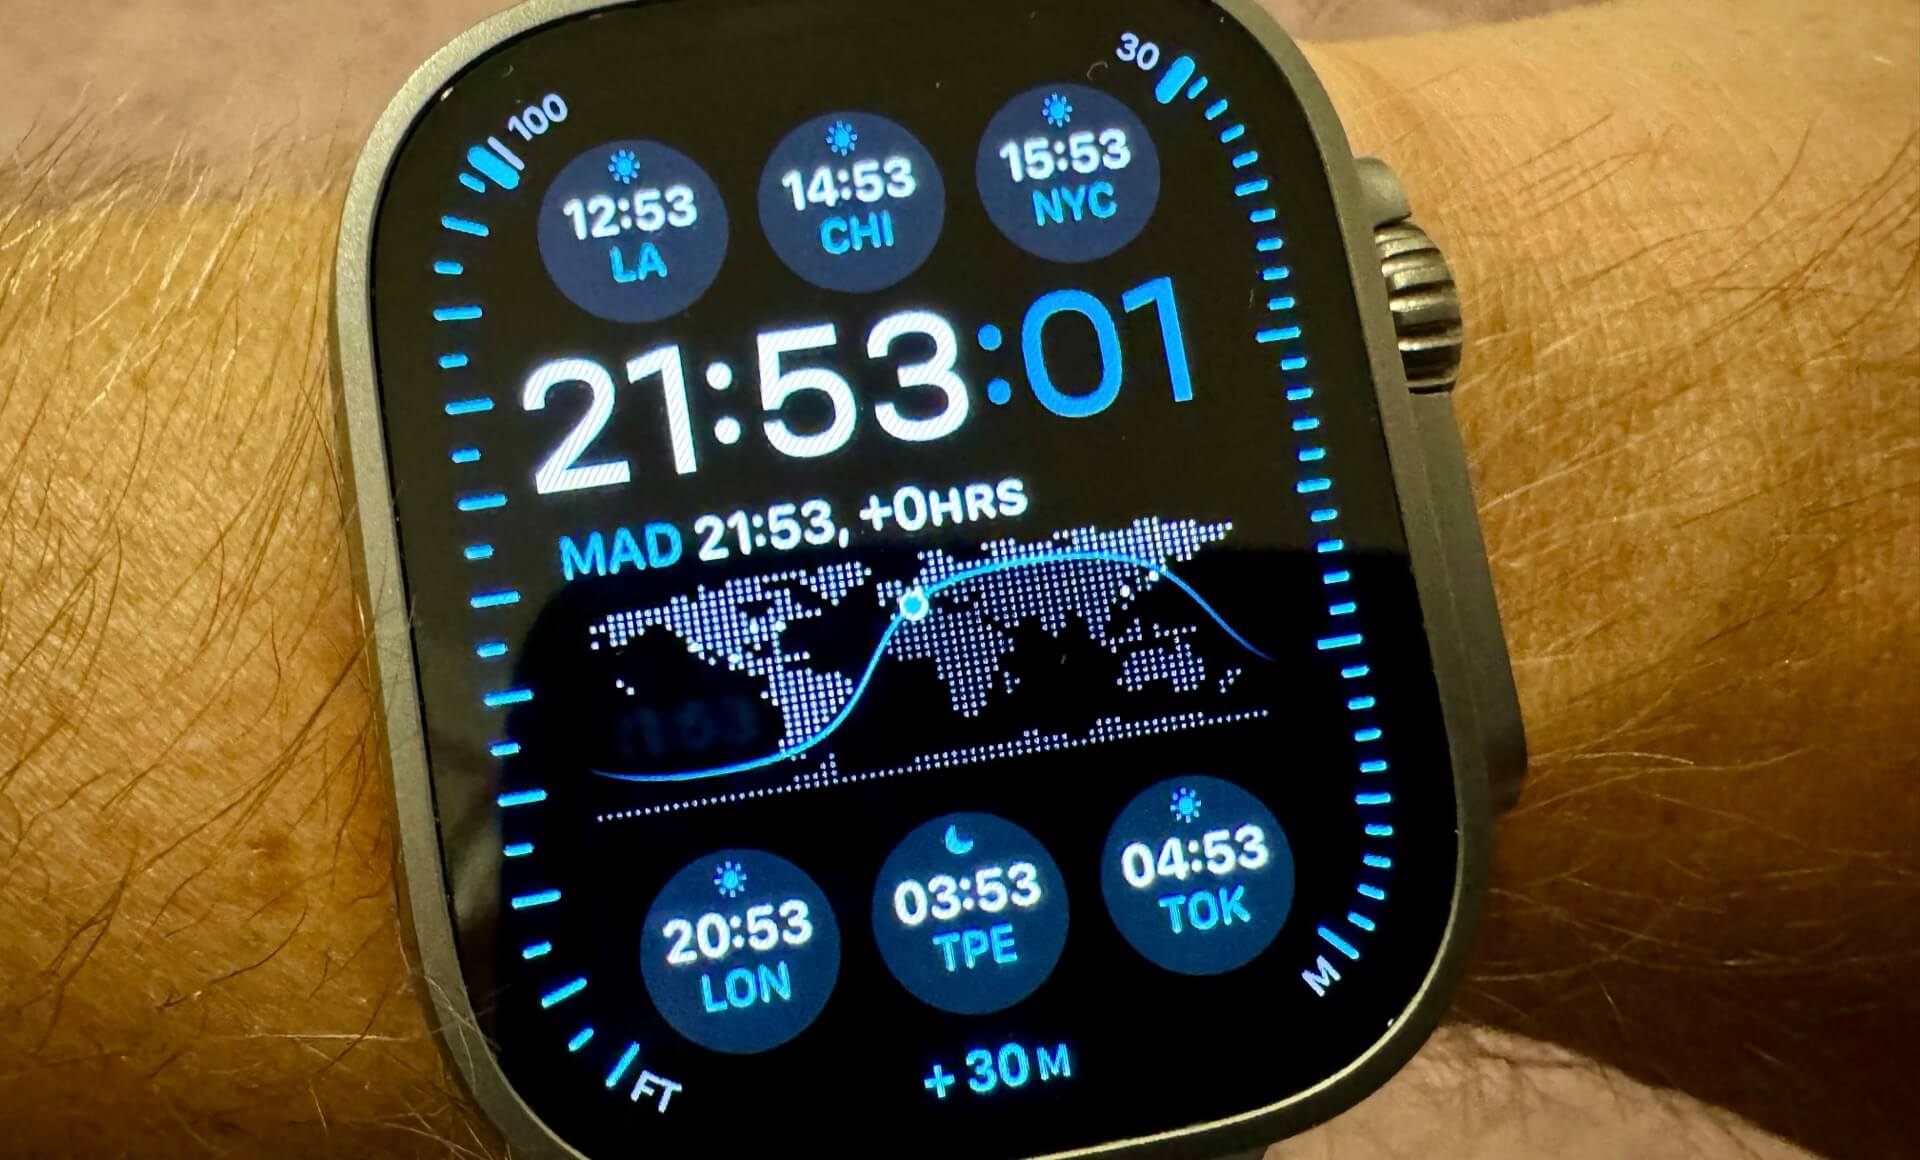 Apple Watch Ultra Modular as a World Clock